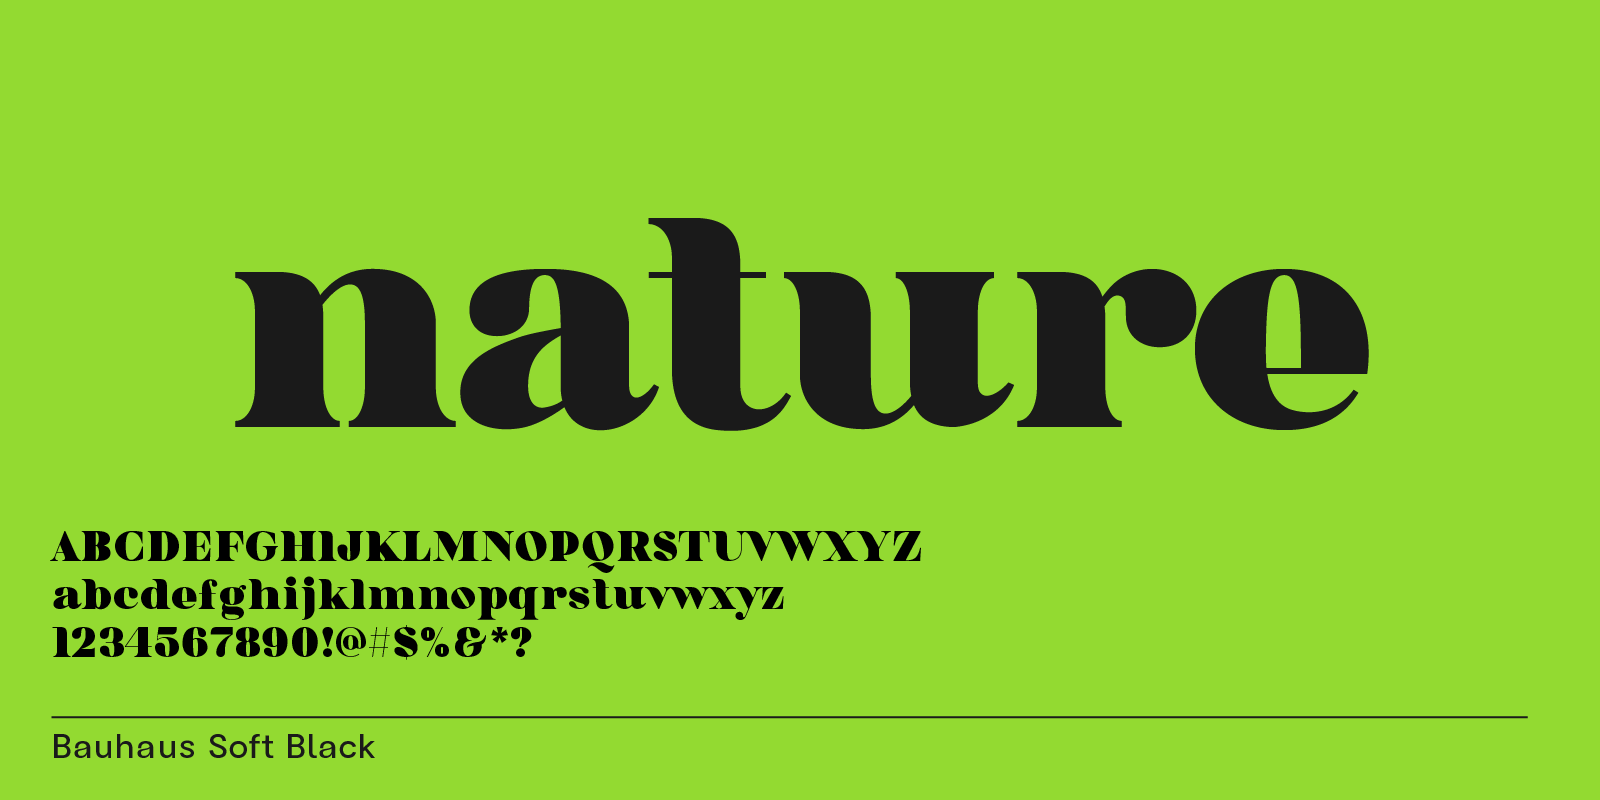 Bauhaus Soft, modern, organic & bold font